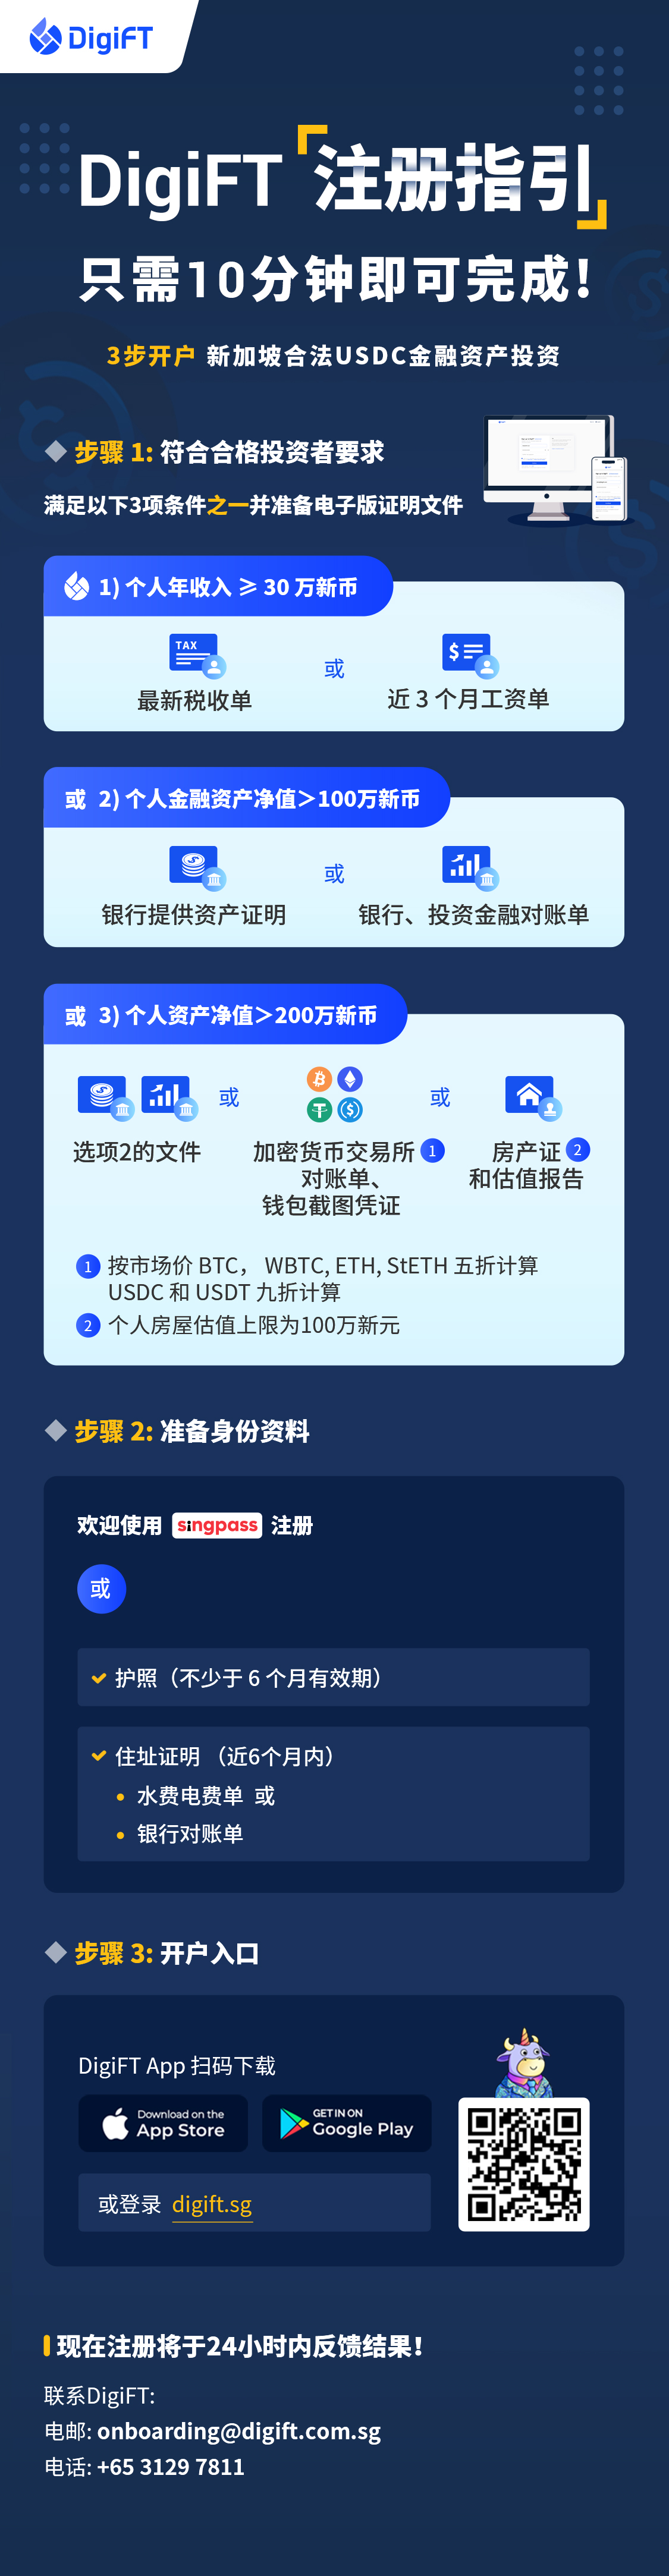 DigiFT 注册指南 (app).jpg